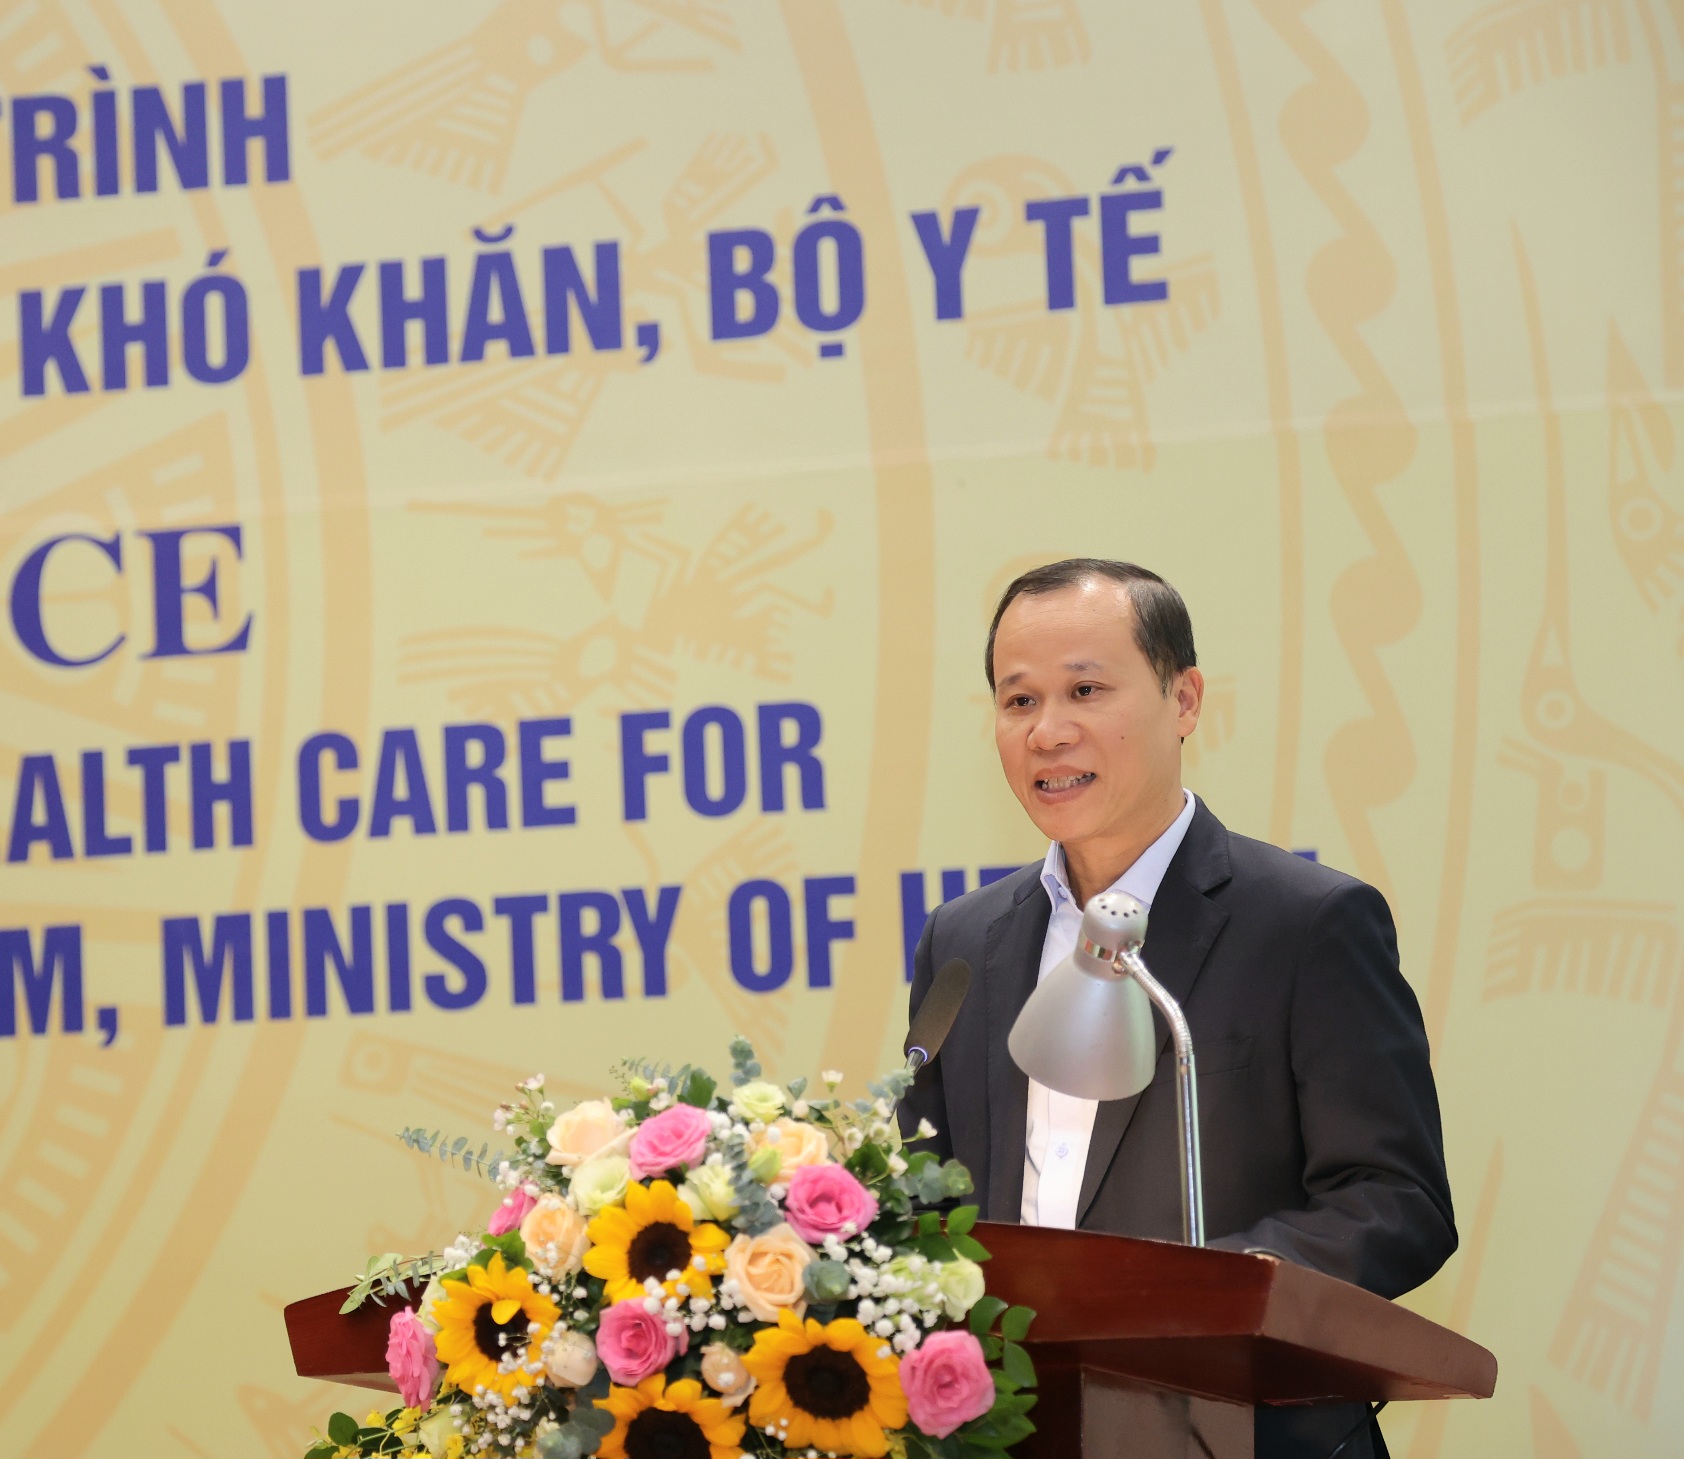 Bộ trưởng Bộ Y tế: Thêm nguồn lực để y tế cơ sở làm tốt hơn công tác chăm sóc sức khoẻ ban đầu- Ảnh 6.